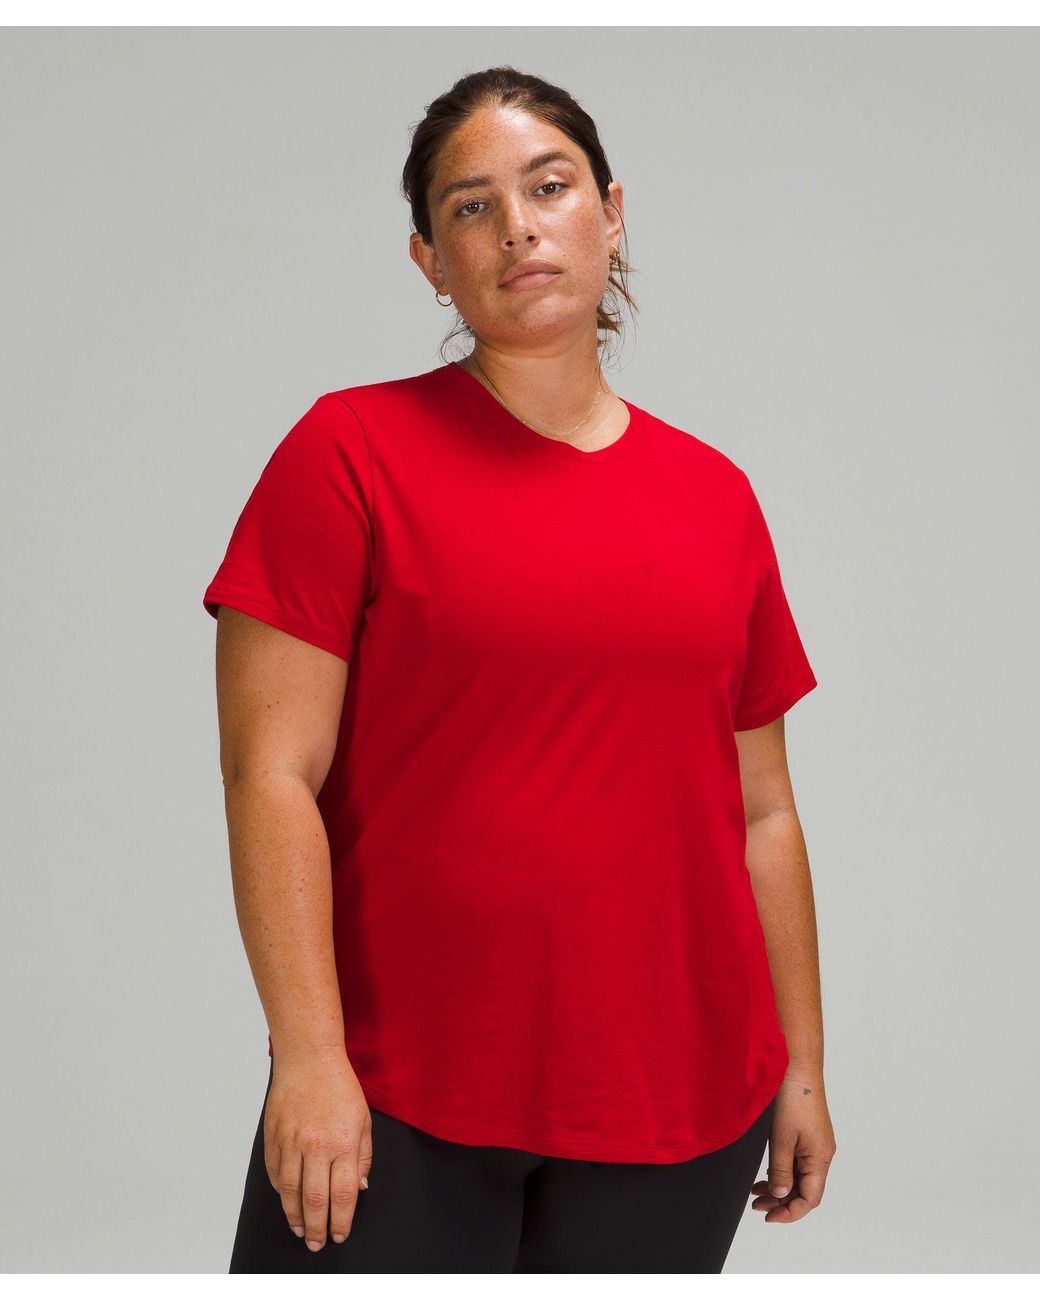 https://cdna.lystit.com/1040/1300/n/photos/lululemon/c71bd1fe/lululemon-athletica-designer-dark-red-Love-Crew-T-shirt.jpeg